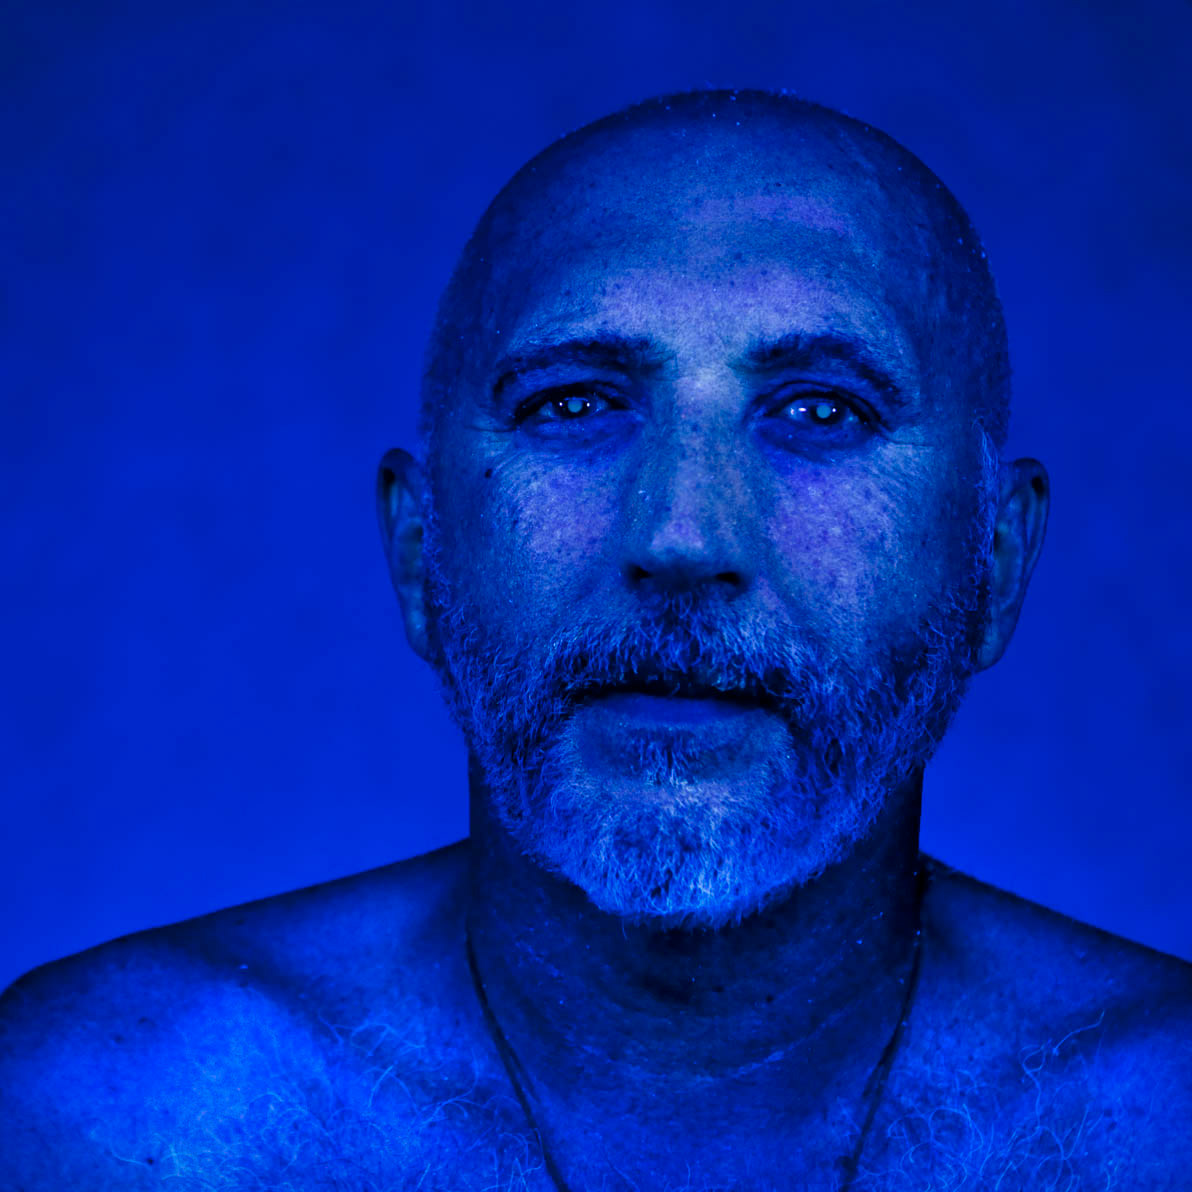 retrato portrait ultravioleta ultraviolet ultraportrait ultrarretrato carlos carlosescolastico escolástico   AZUL blue hidden oculto dream